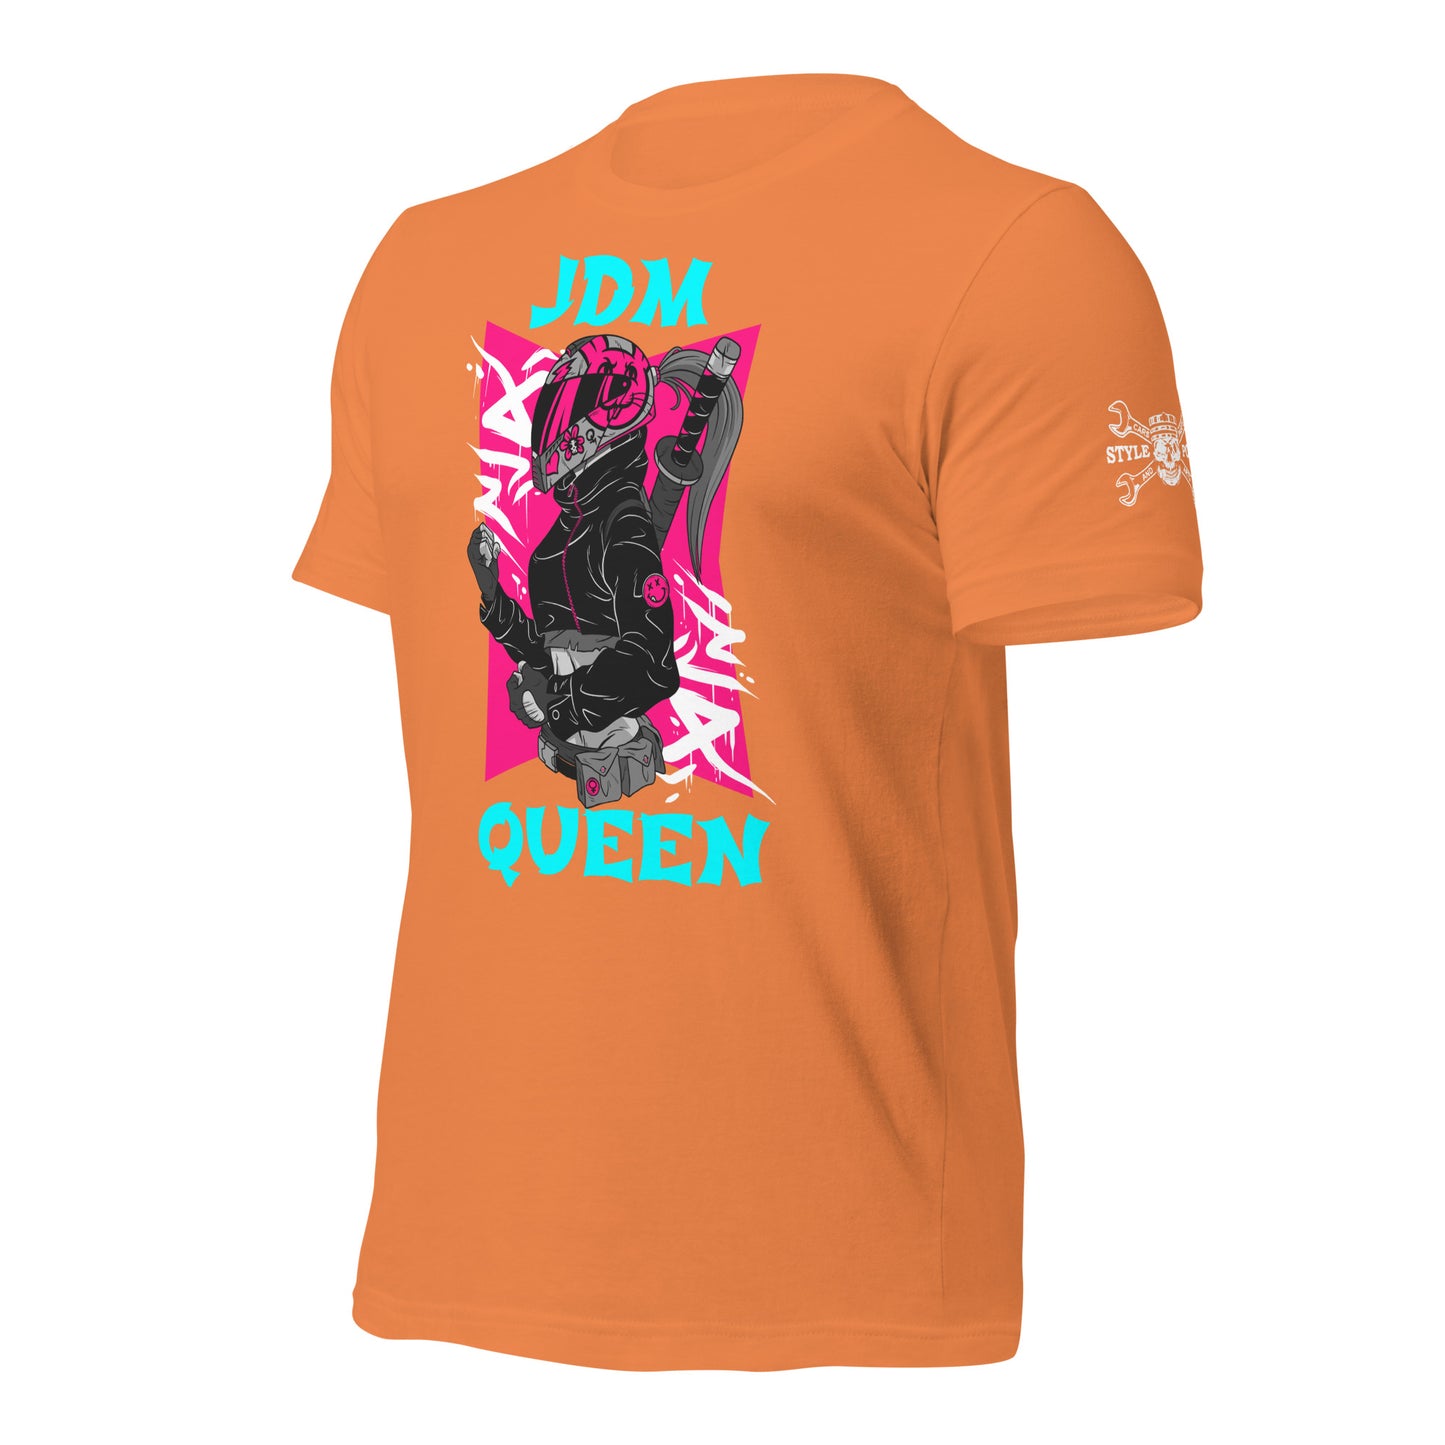 Stylepoint JDM Queen T Shirt